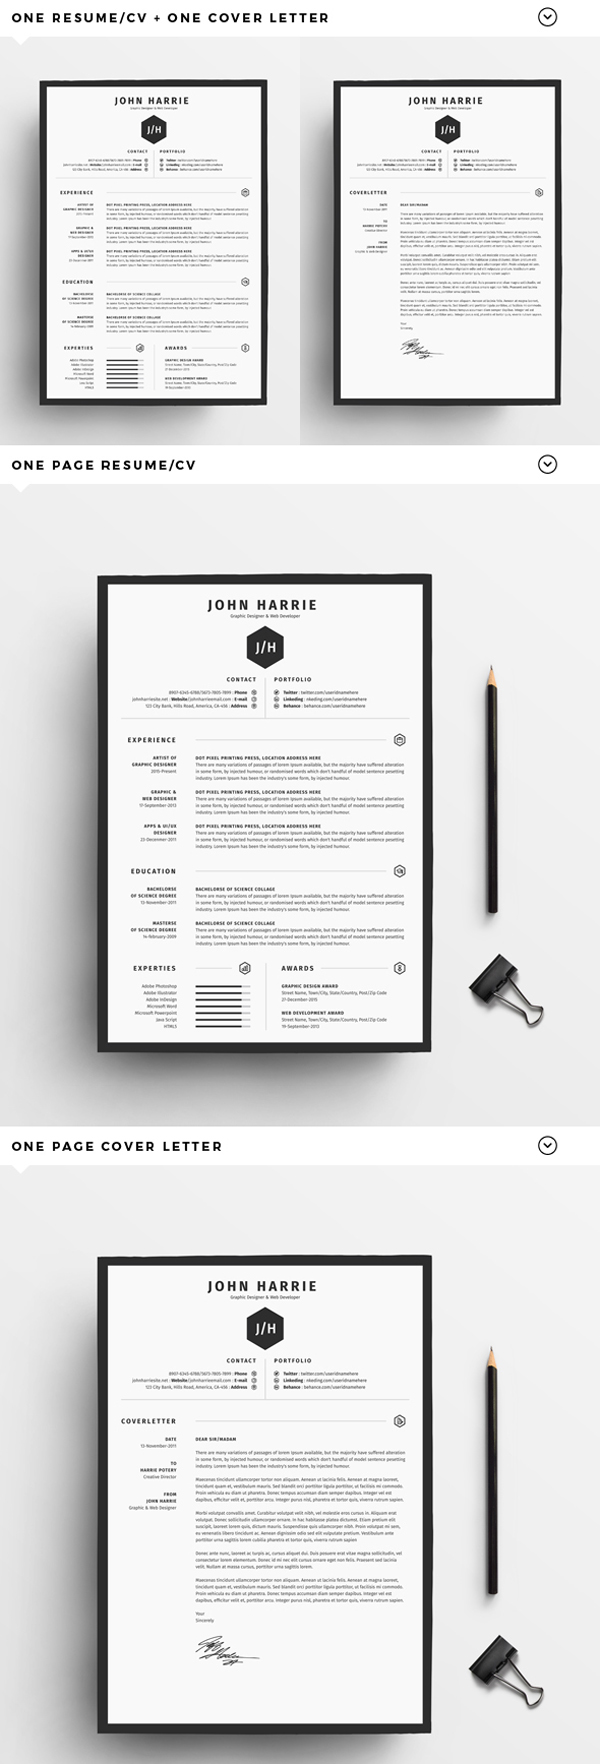 Free Resume/CV + Cover Letter